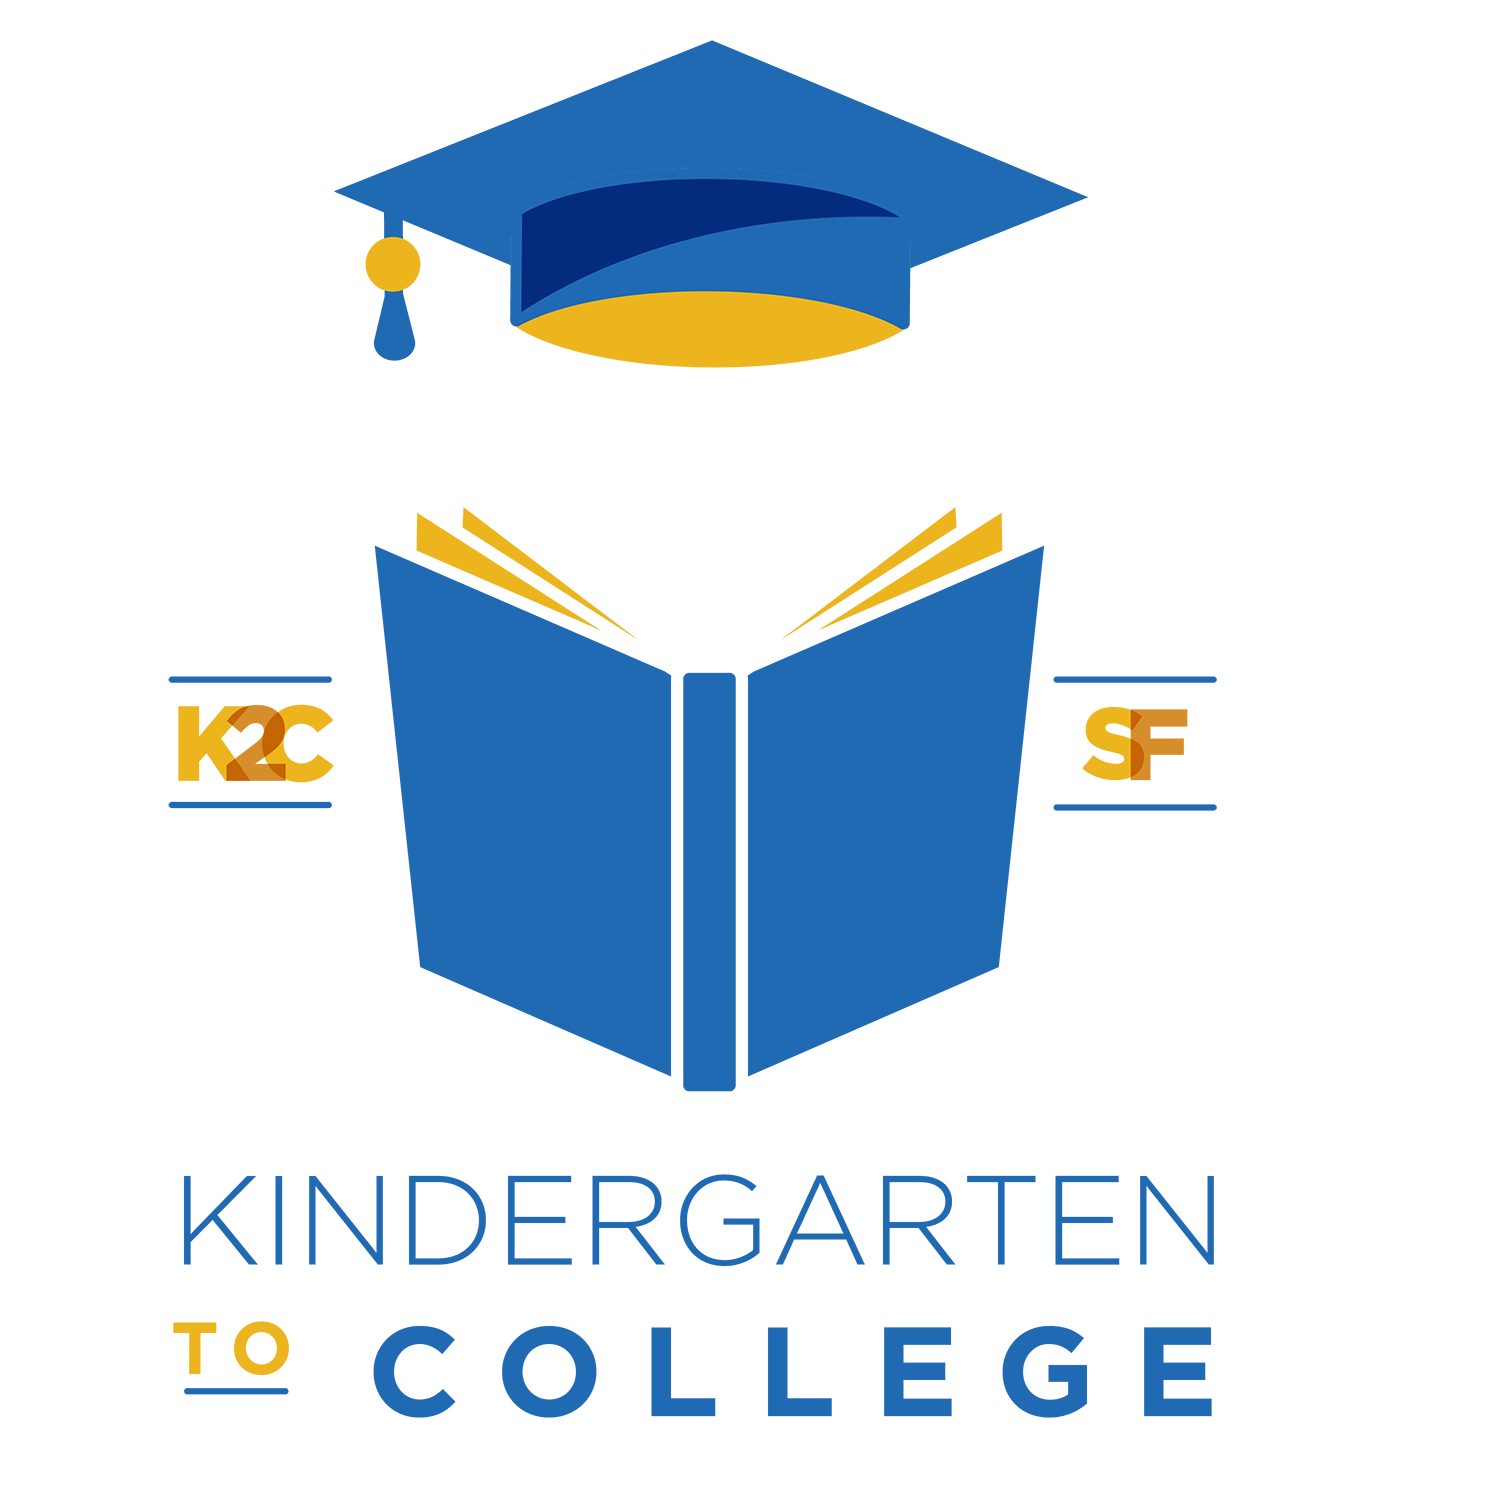 K2C Logo